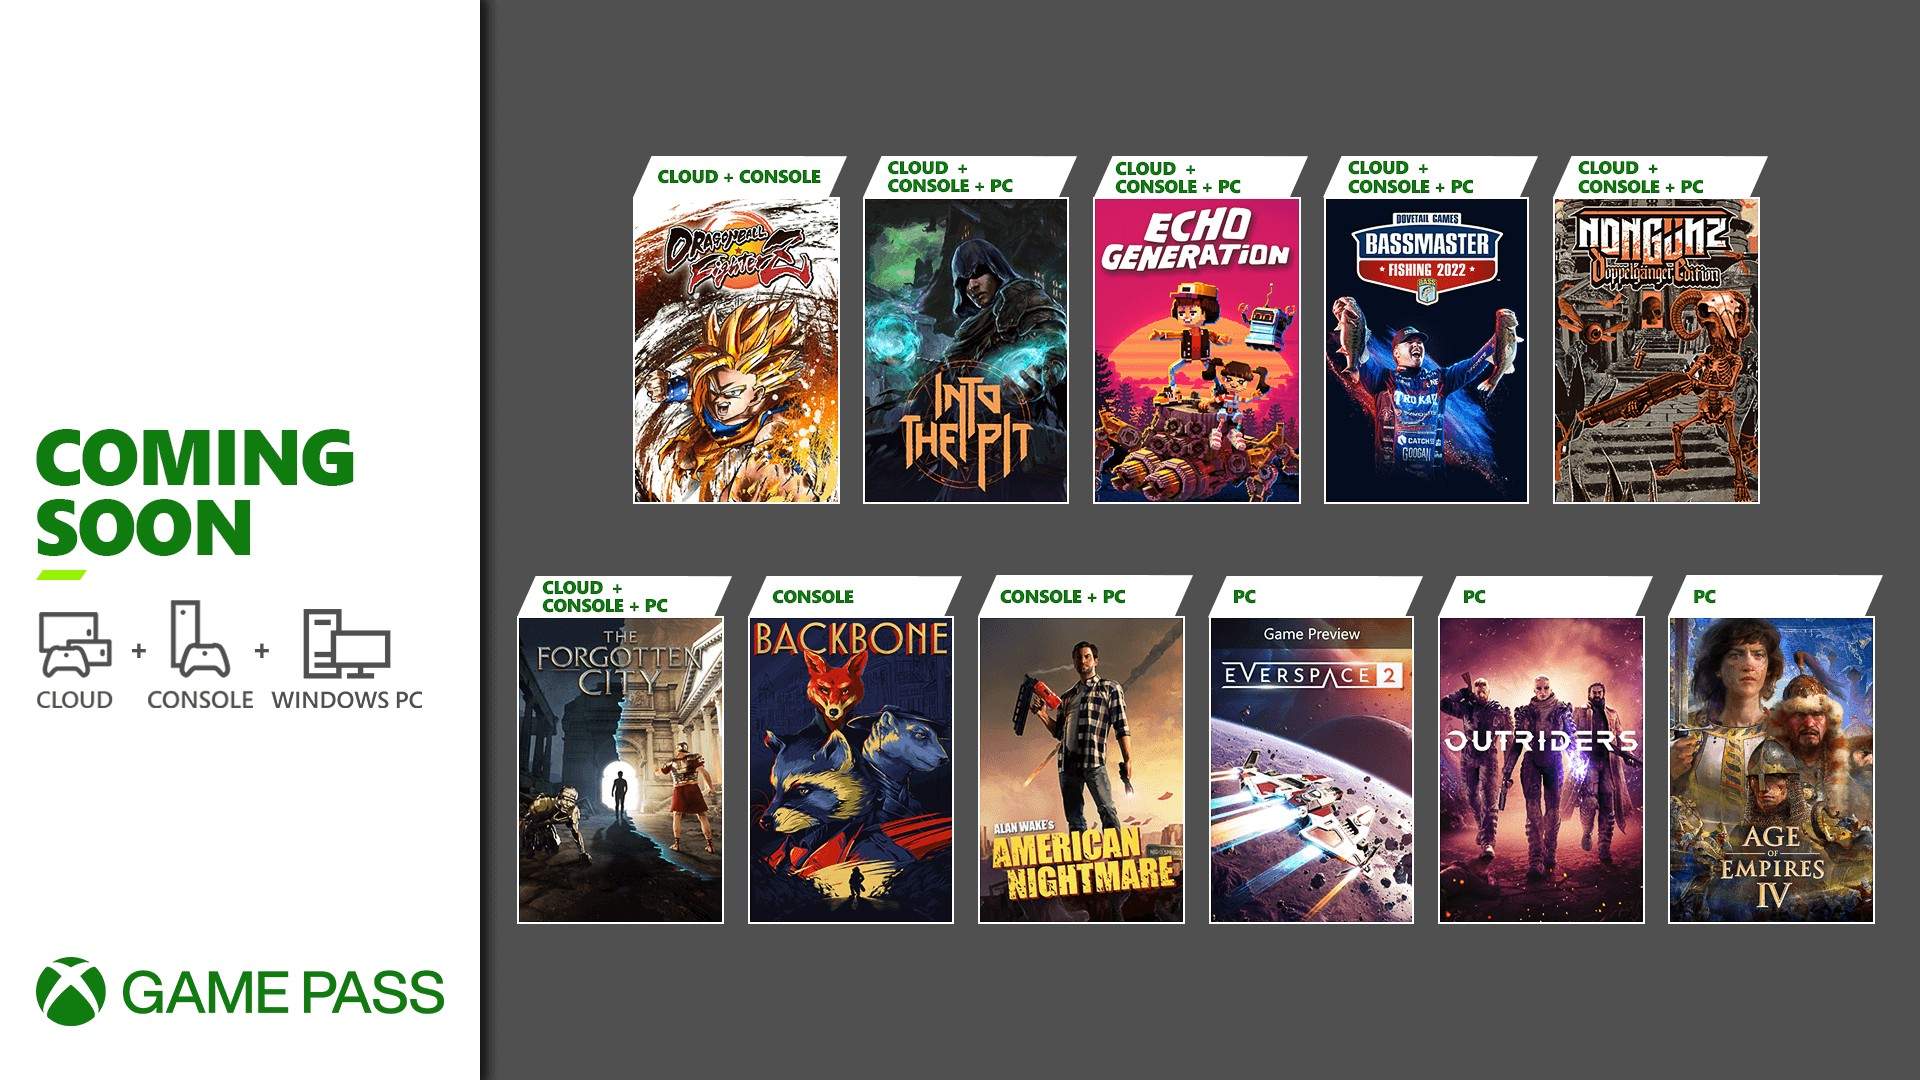 Desvelados los nuevos títulos que llegaran a Xbox Game Pass en la segunda mitad de octubre - Ya conocemos los próximos títulos que llegarán a Xbox Game Pass en la segunda mitad del mes de octubre para nuestras consolas Xbox, PC y Cloud.